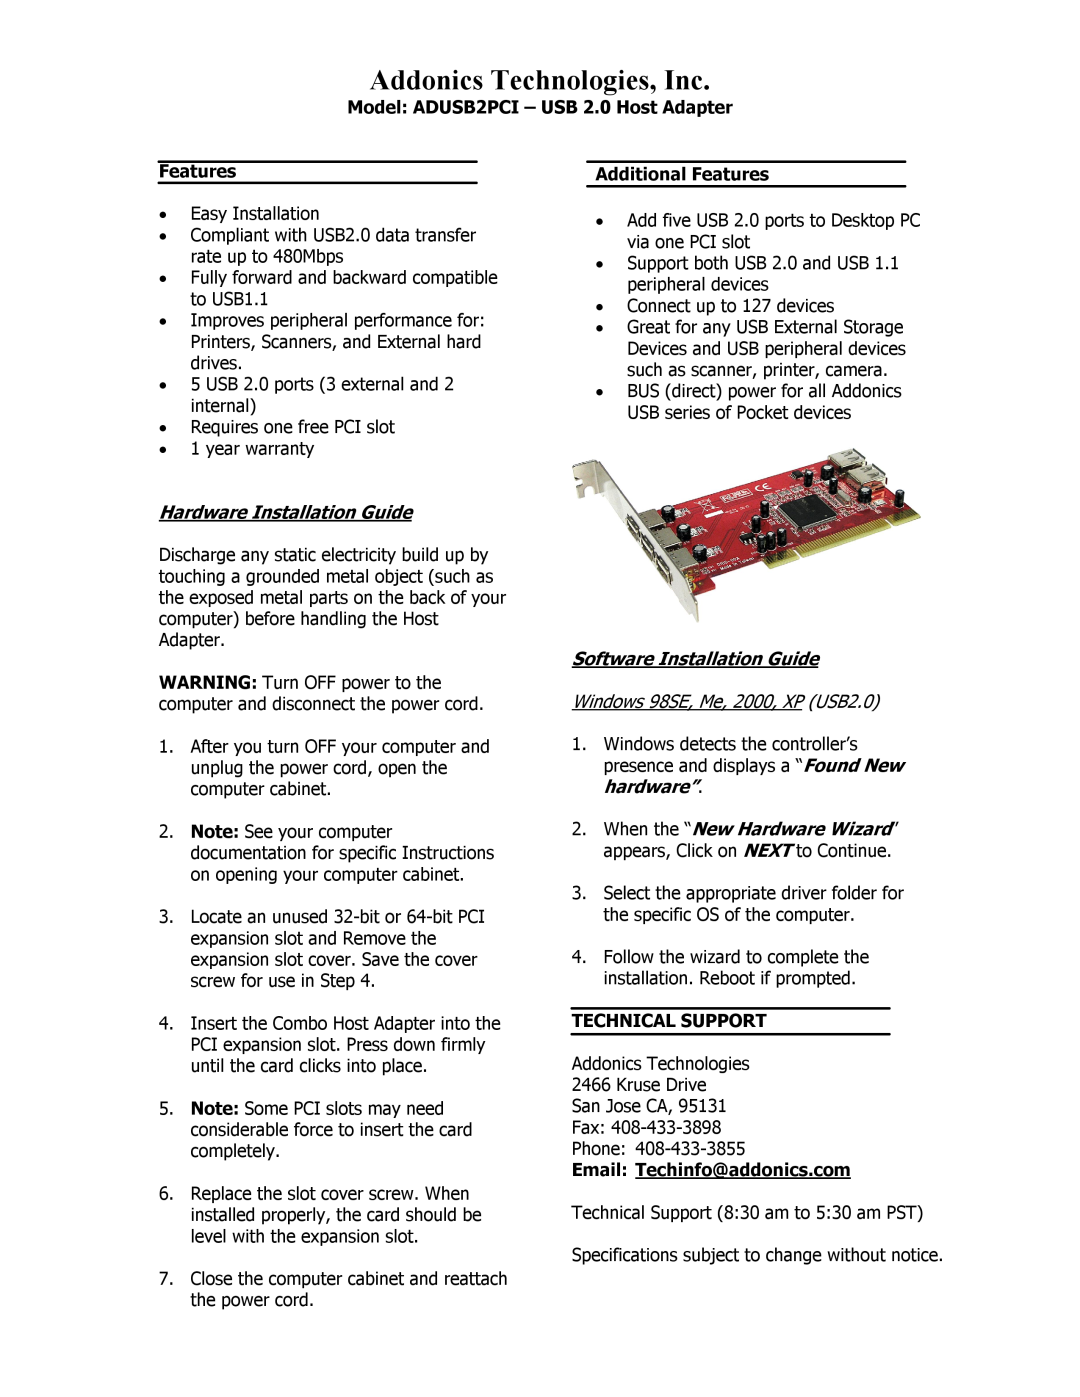 Addonics Technologies warranty Addonics Technologies, Inc, Model ADUSB2PCI - USB 2.0 Host Adapter, Features 